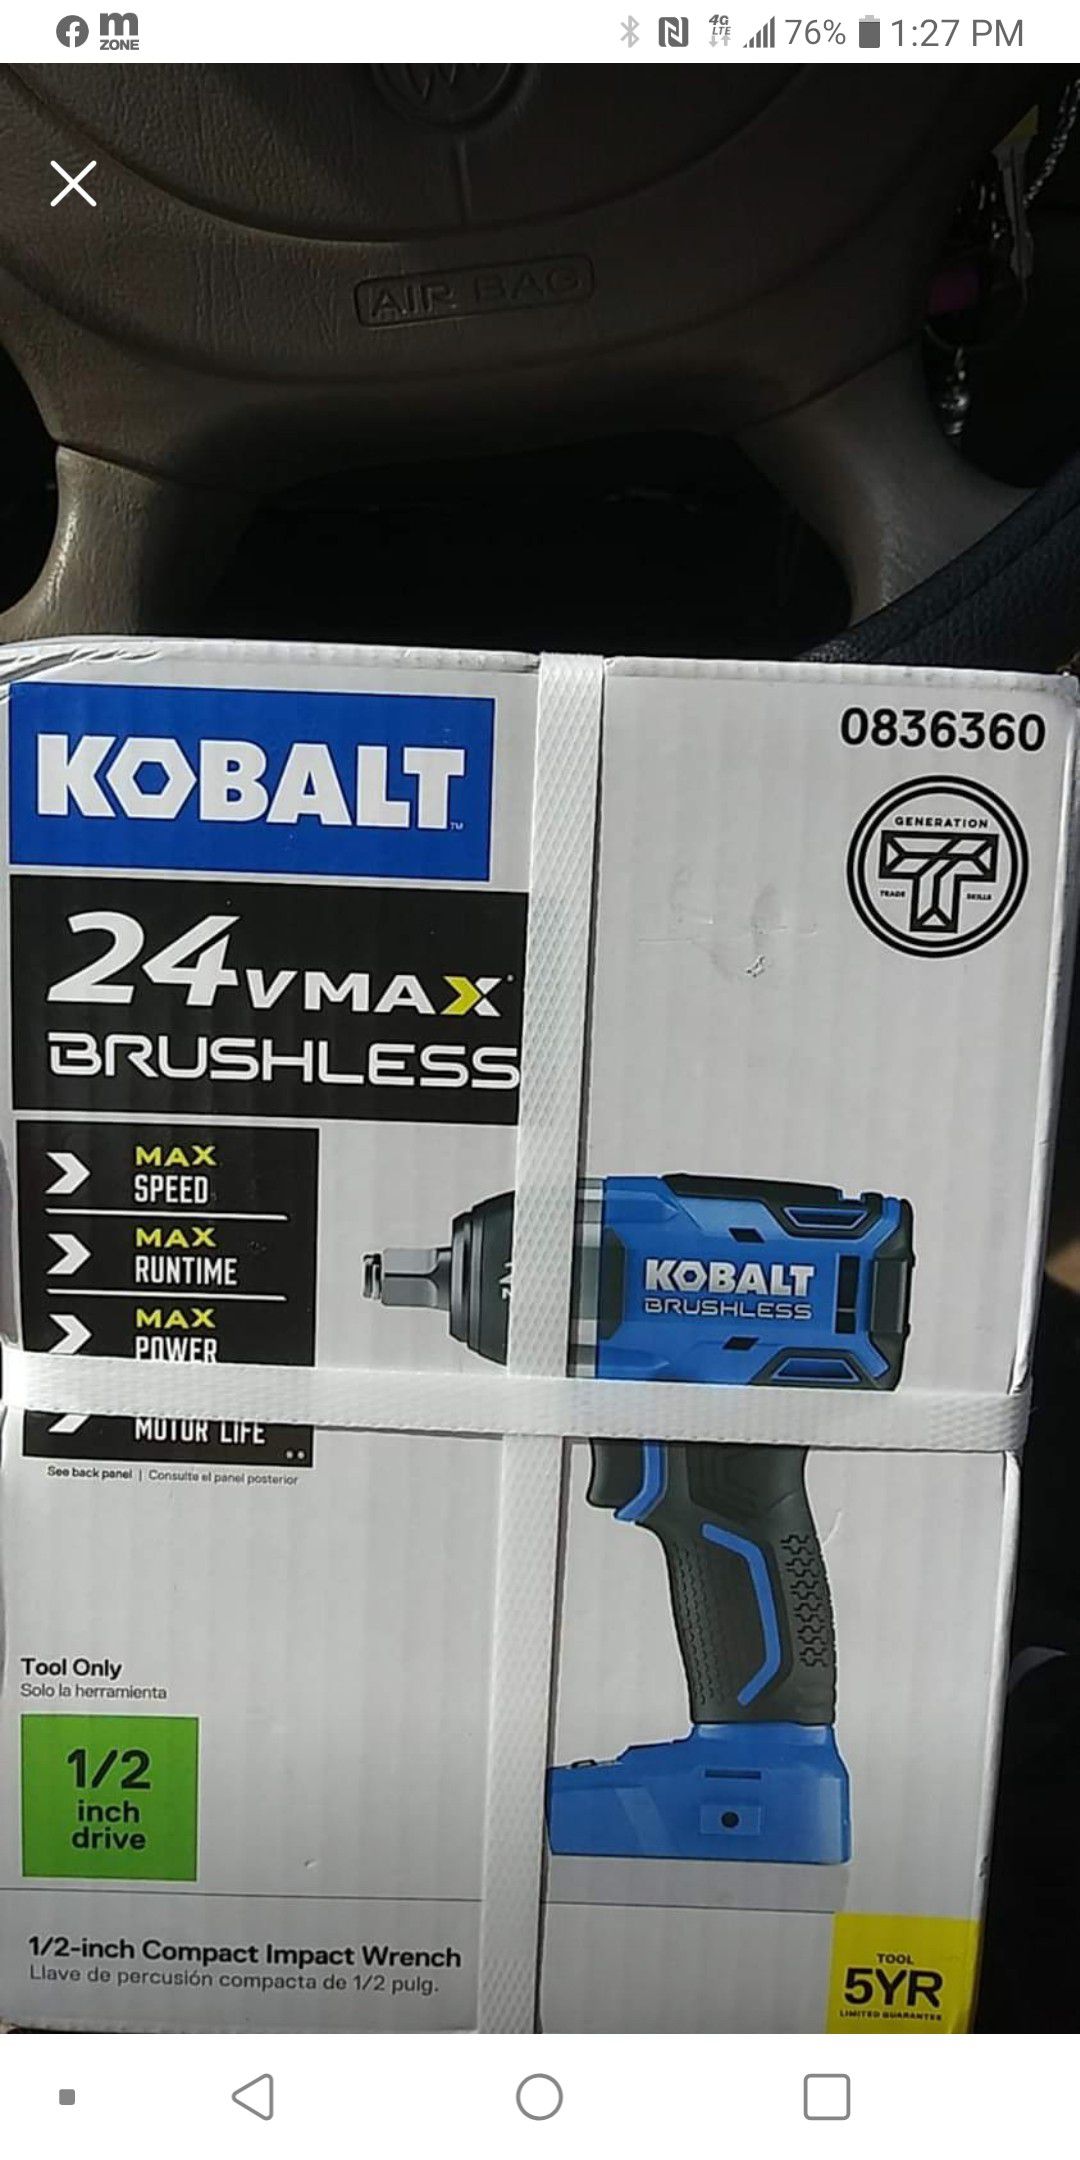 Kobalt brushless drill